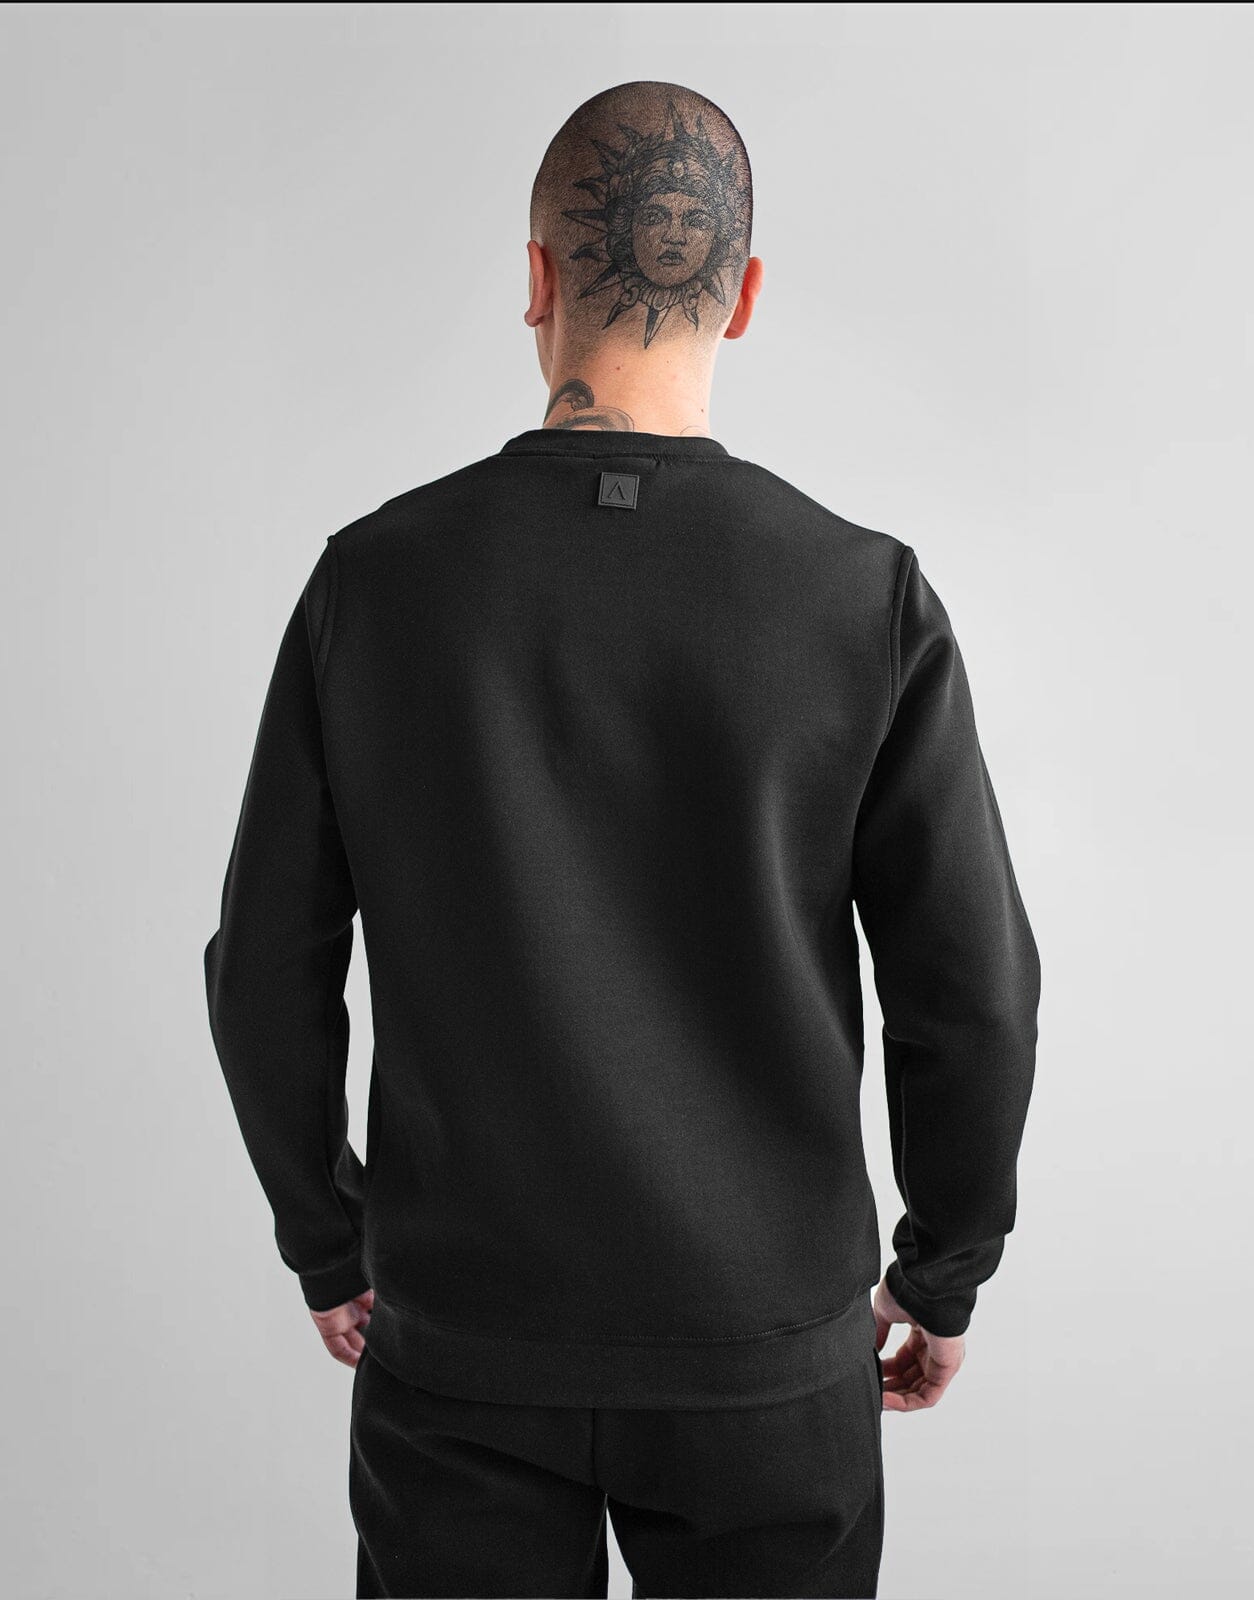 Fade Essential Sweatshirt Black - Subwear